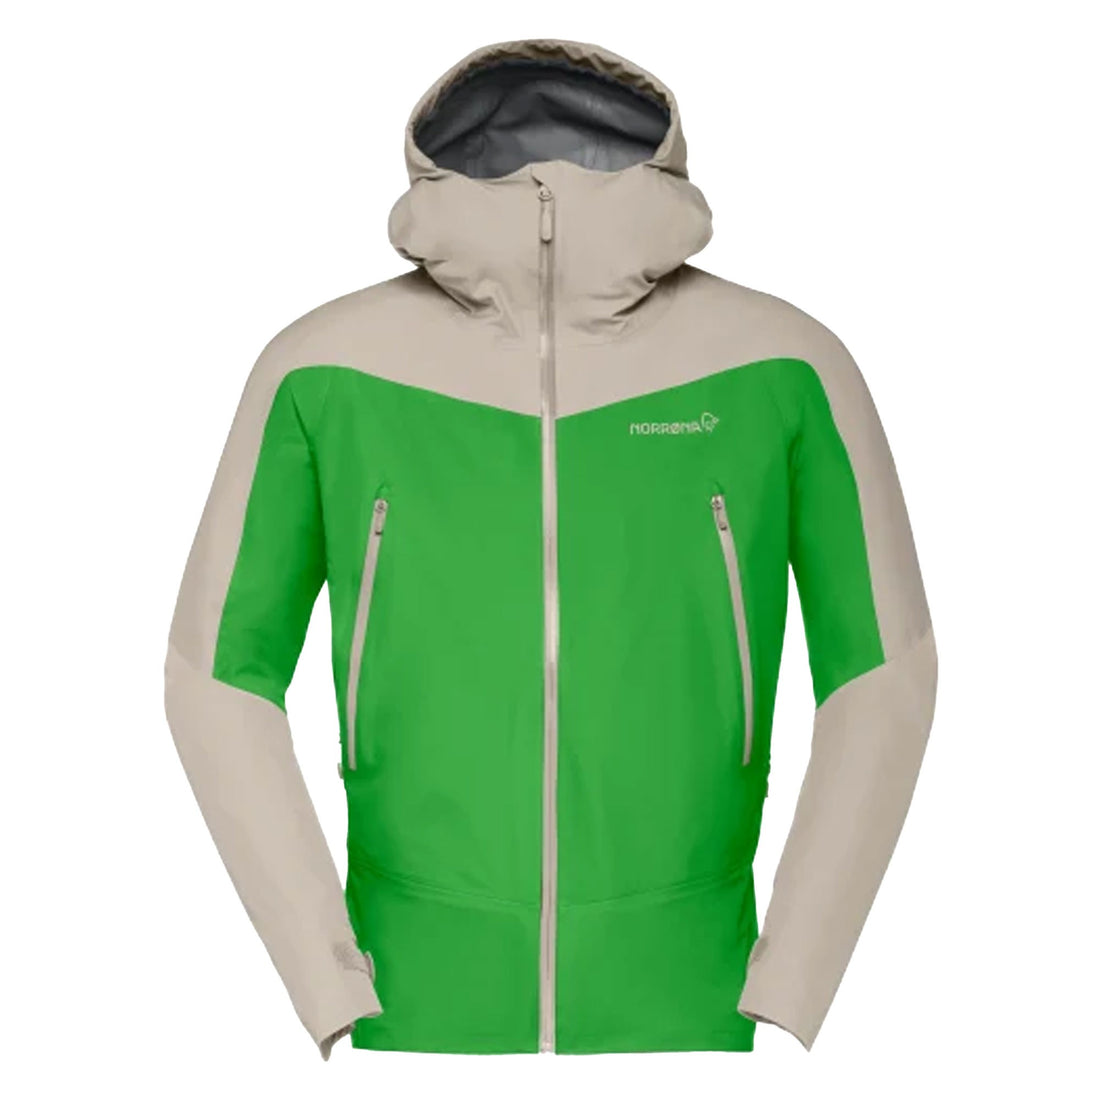 Falketind Gore-Tex Jacket Mens - Classic Green